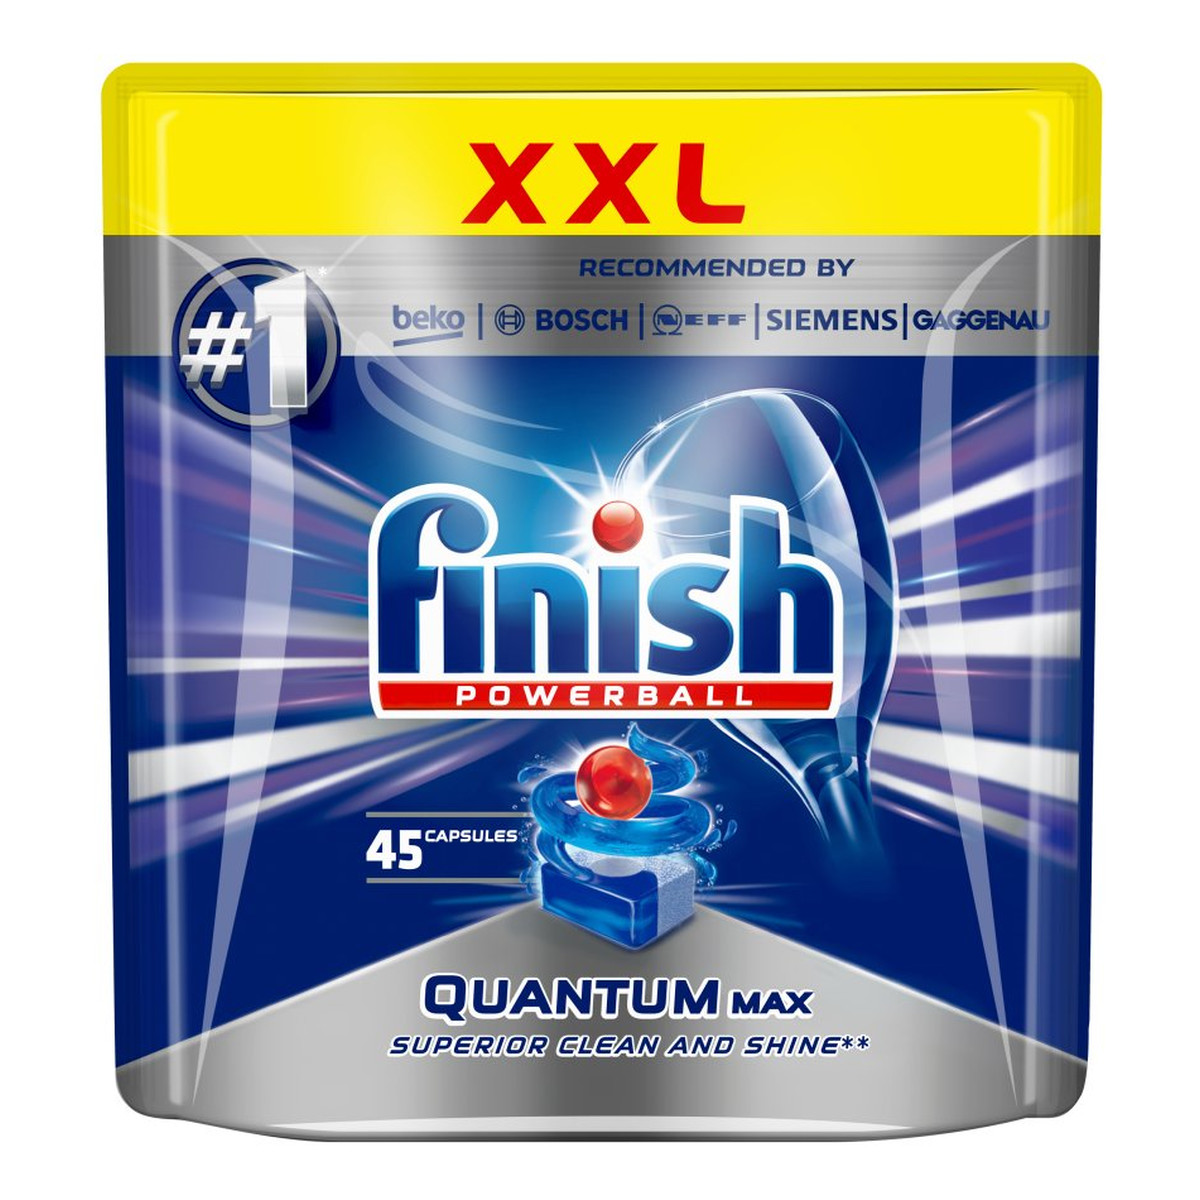 Finish Powerball Quantum Max tabletki do mycia naczyń w zmywarkach 45szt